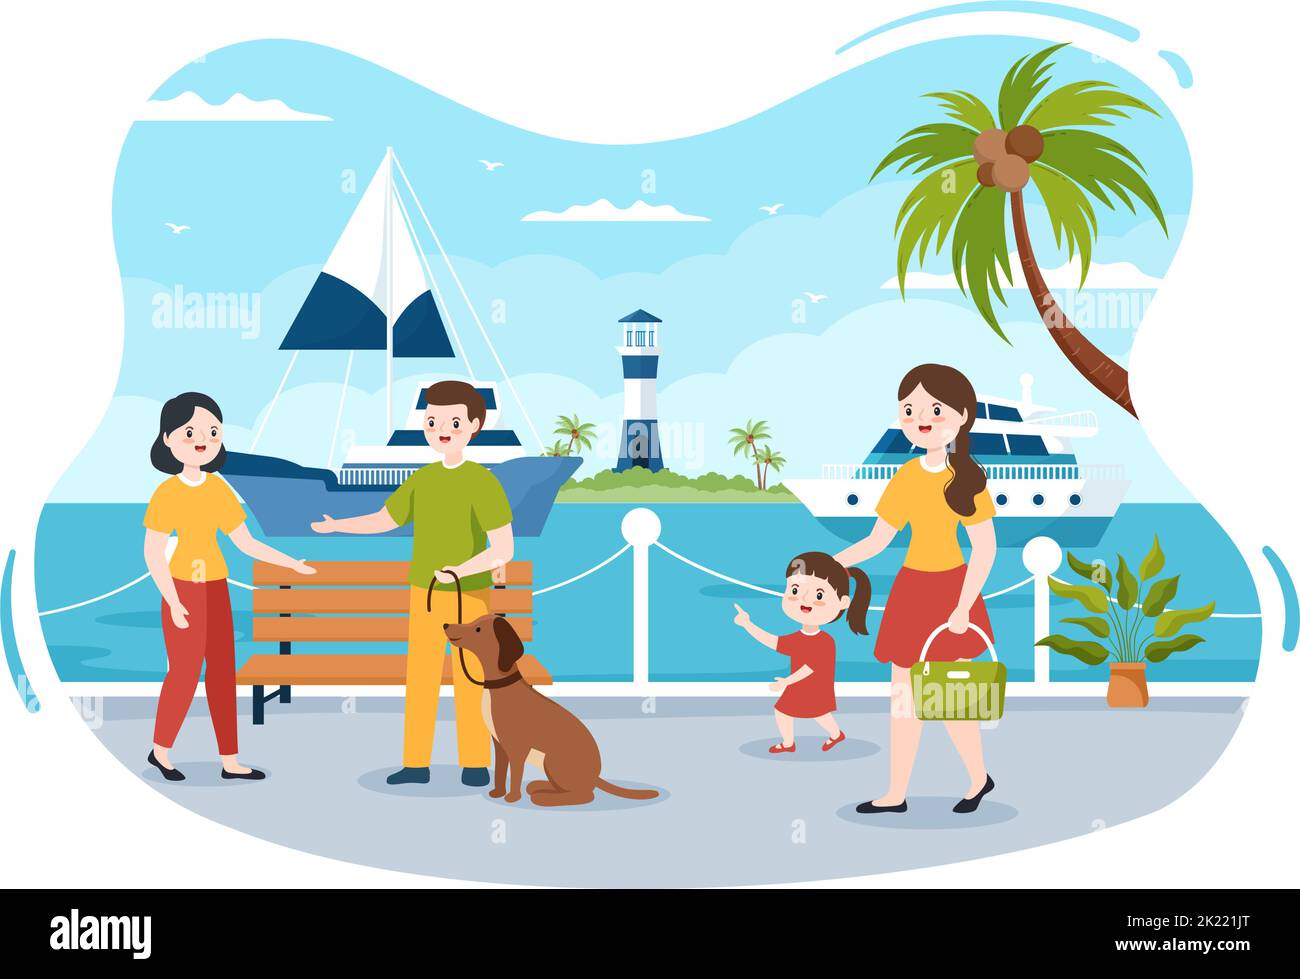 Yachten Vorlage Handgezeichnete Cartoon flache Illustration mit Menschen Tanzen, Sonnenbaden, Cocktails trinken und entspannen auf der Kreuzfahrt-Yacht am Ozean Stock Vektor